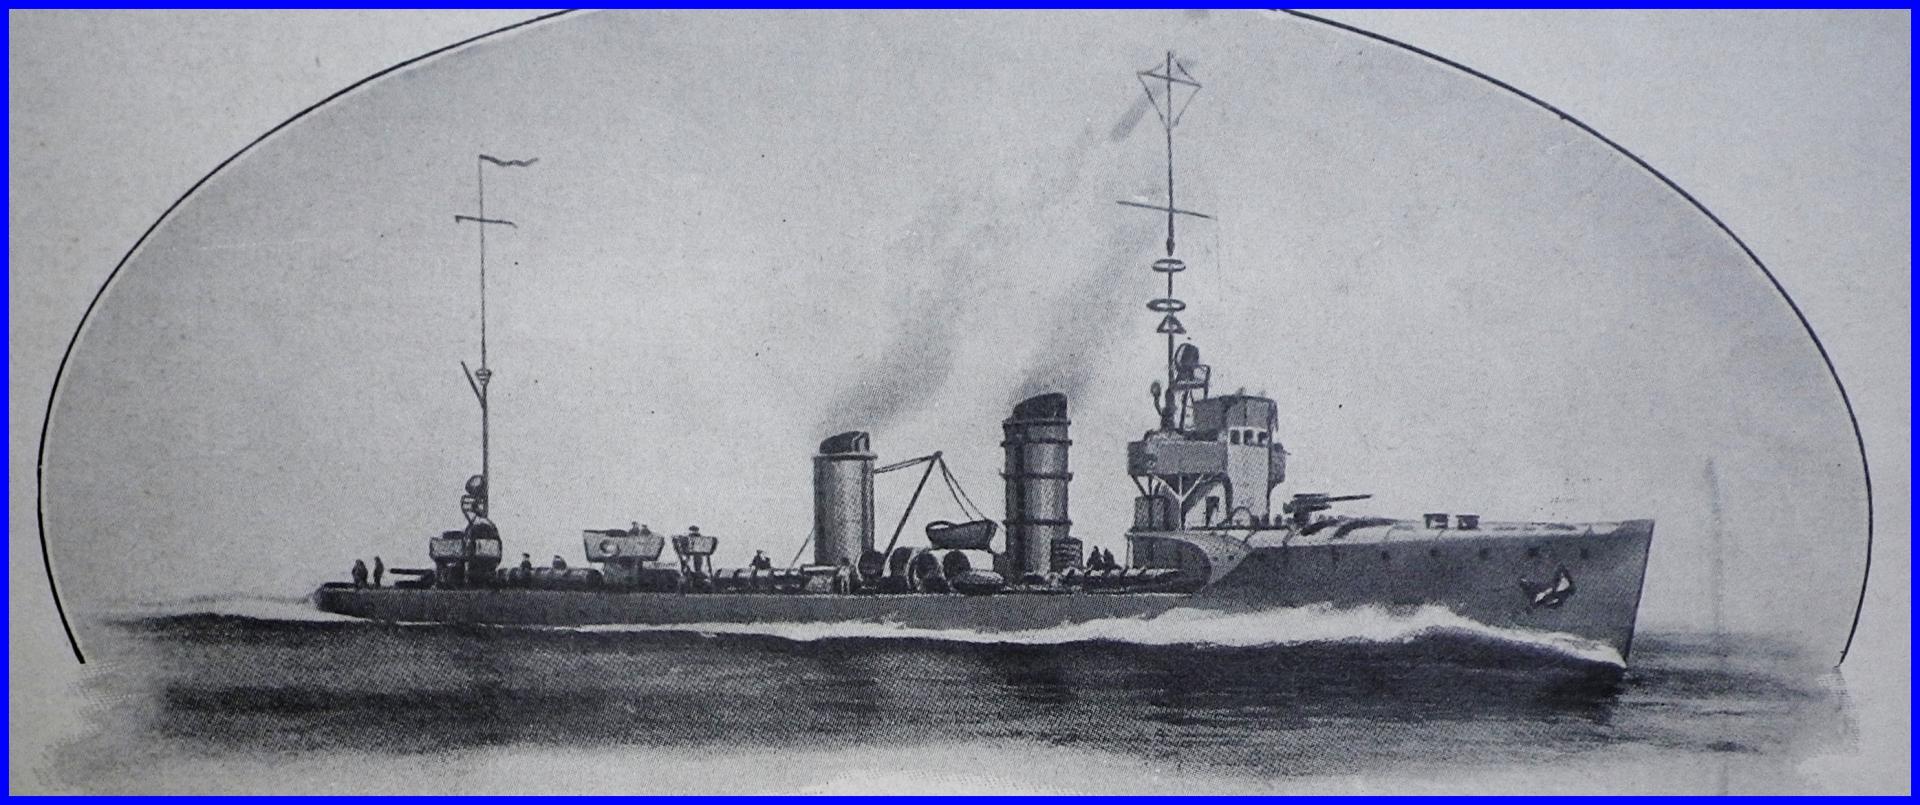 Calais 14 18 destroyer allemand g 85 qui bombarda calais nuit du 20 21 avril 1917 et qui fut coule par le destroyer anglais bloke encadre